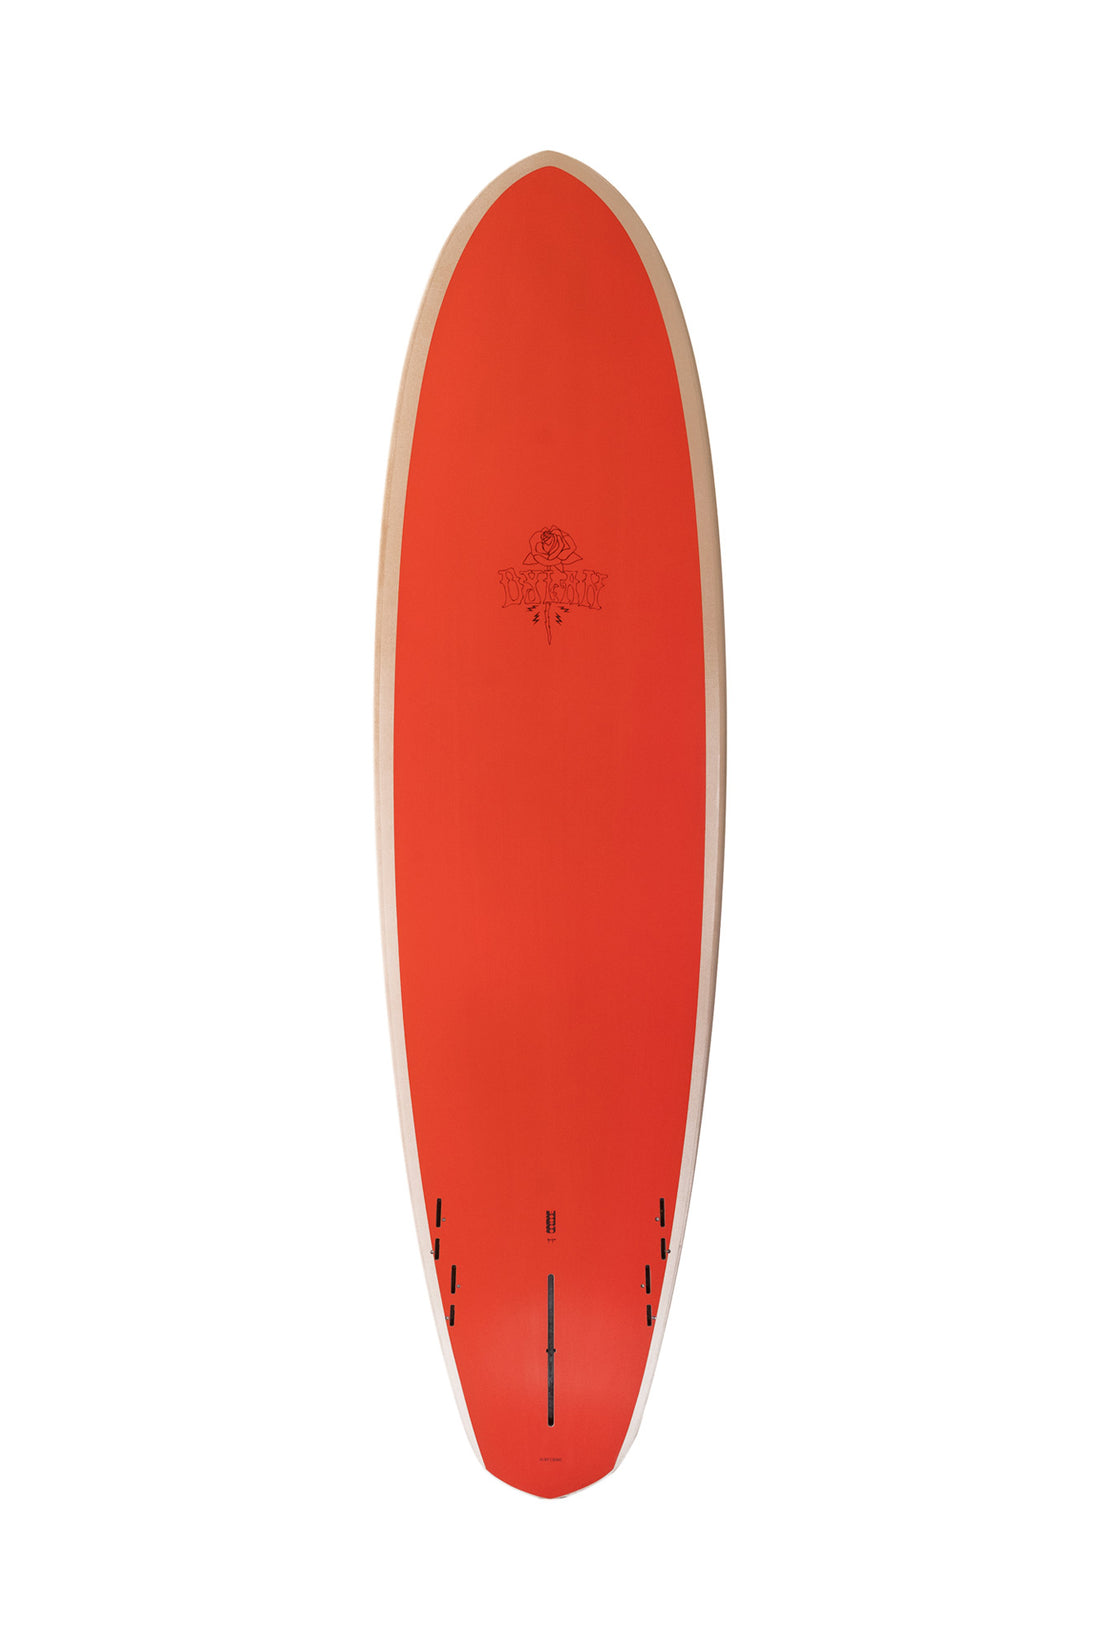 7'1 DYLAN GRAVES BONZER SURF CRIME - GREY/EGGNOG SURFBOARD SURF CRIME   